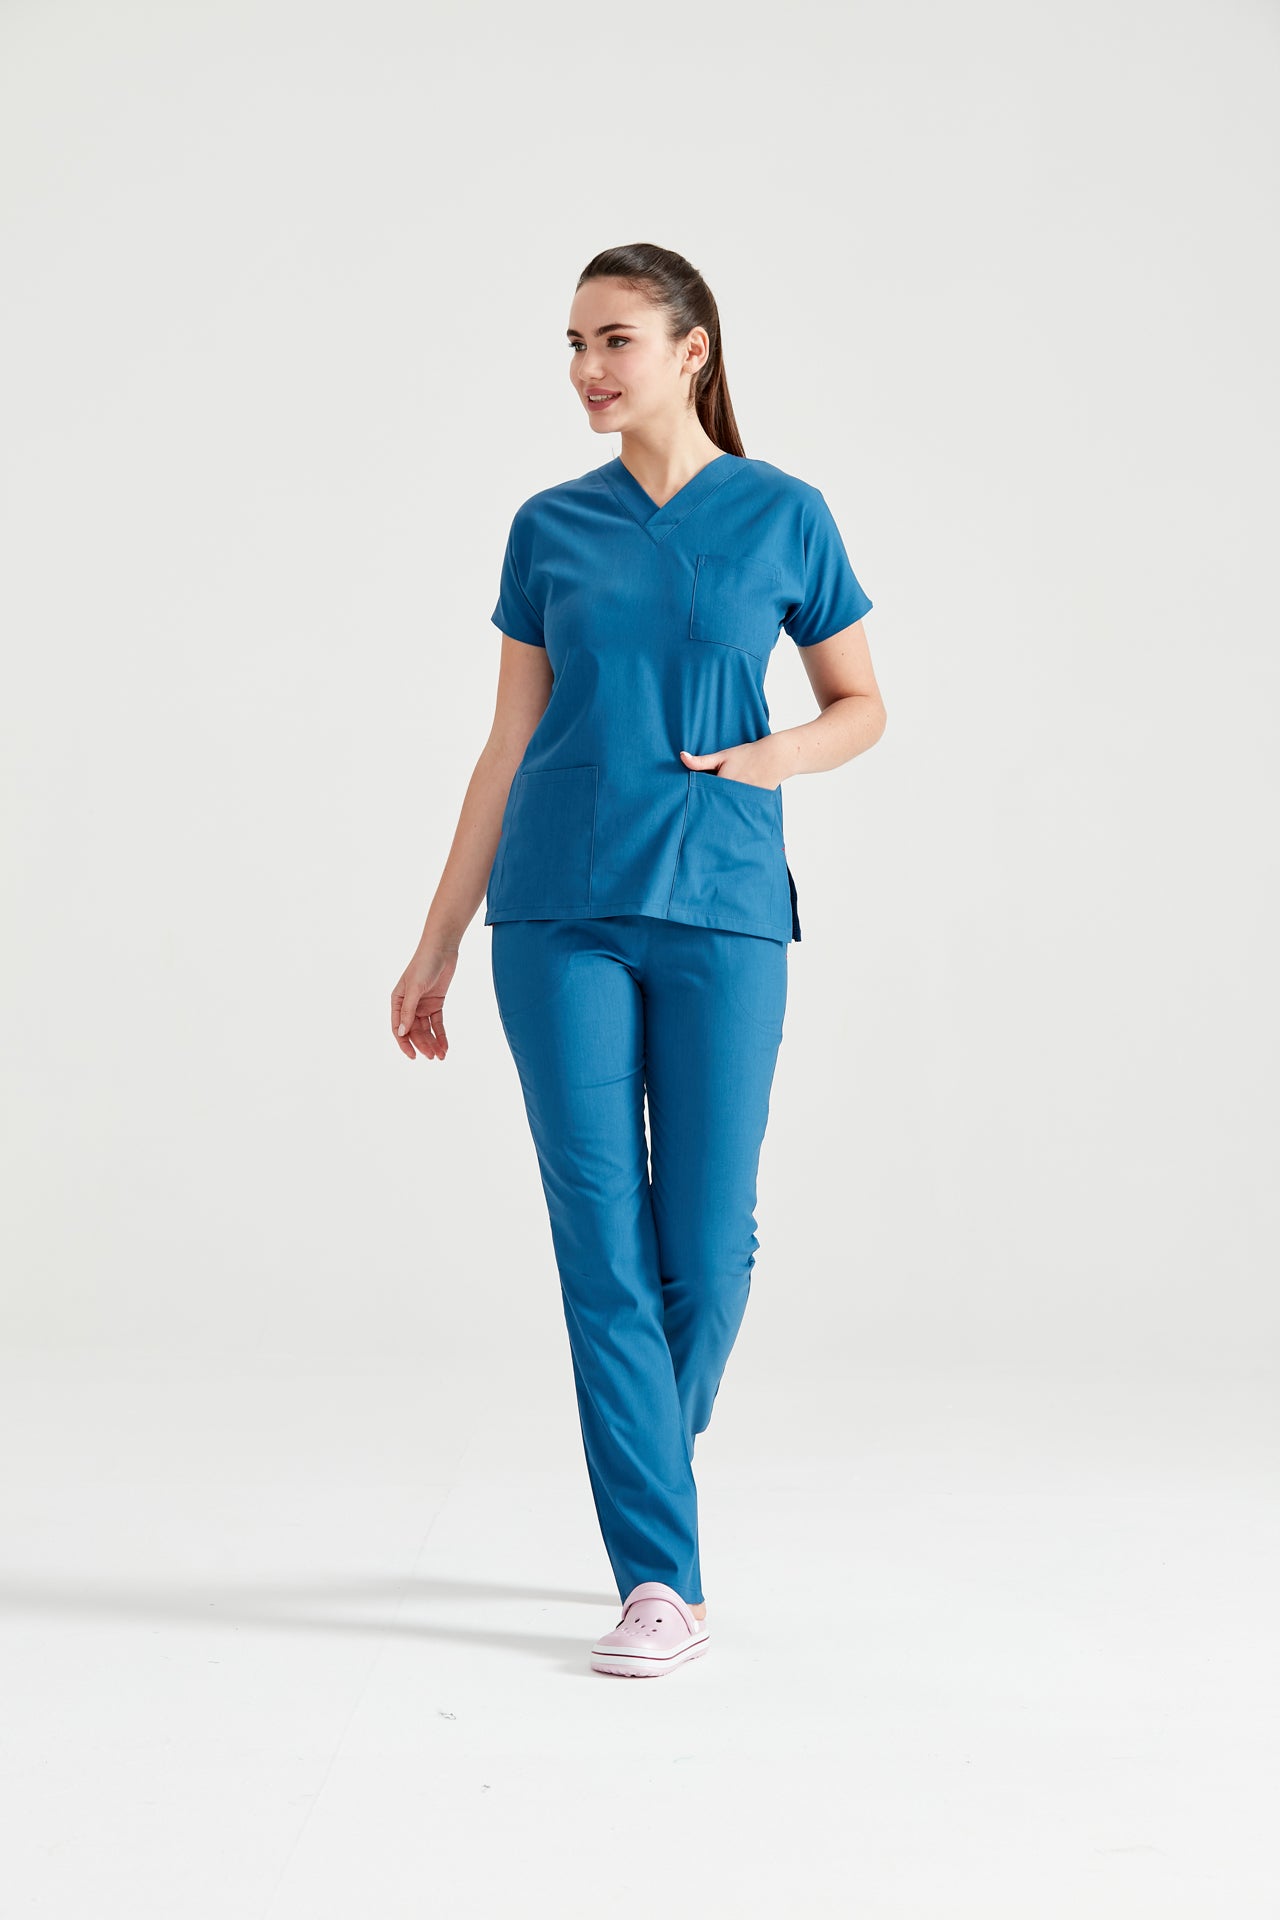 Asistenta medicala imbracat in costum medical femei, albastru Petrol, vedere din picioare